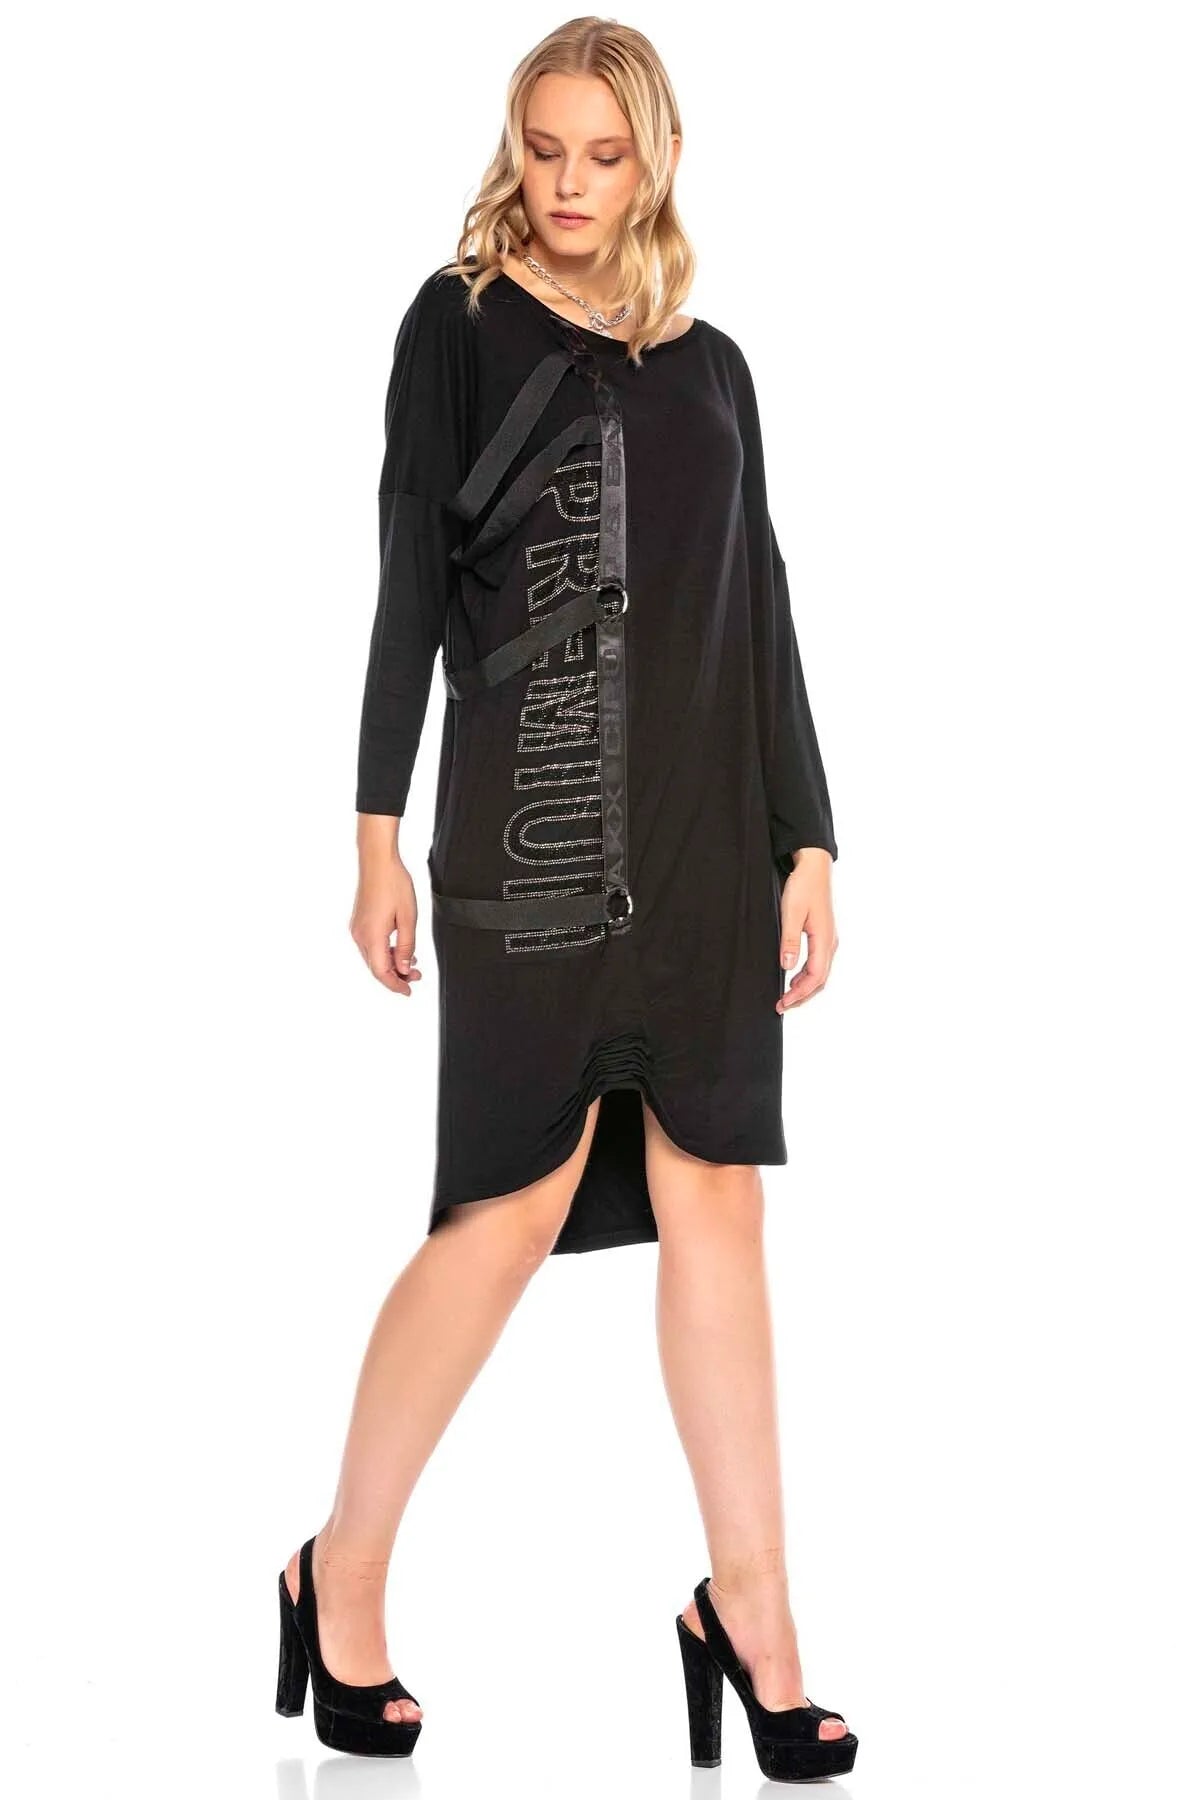 WY132 Damen Jerseykleid mit extravaganten Applikationen